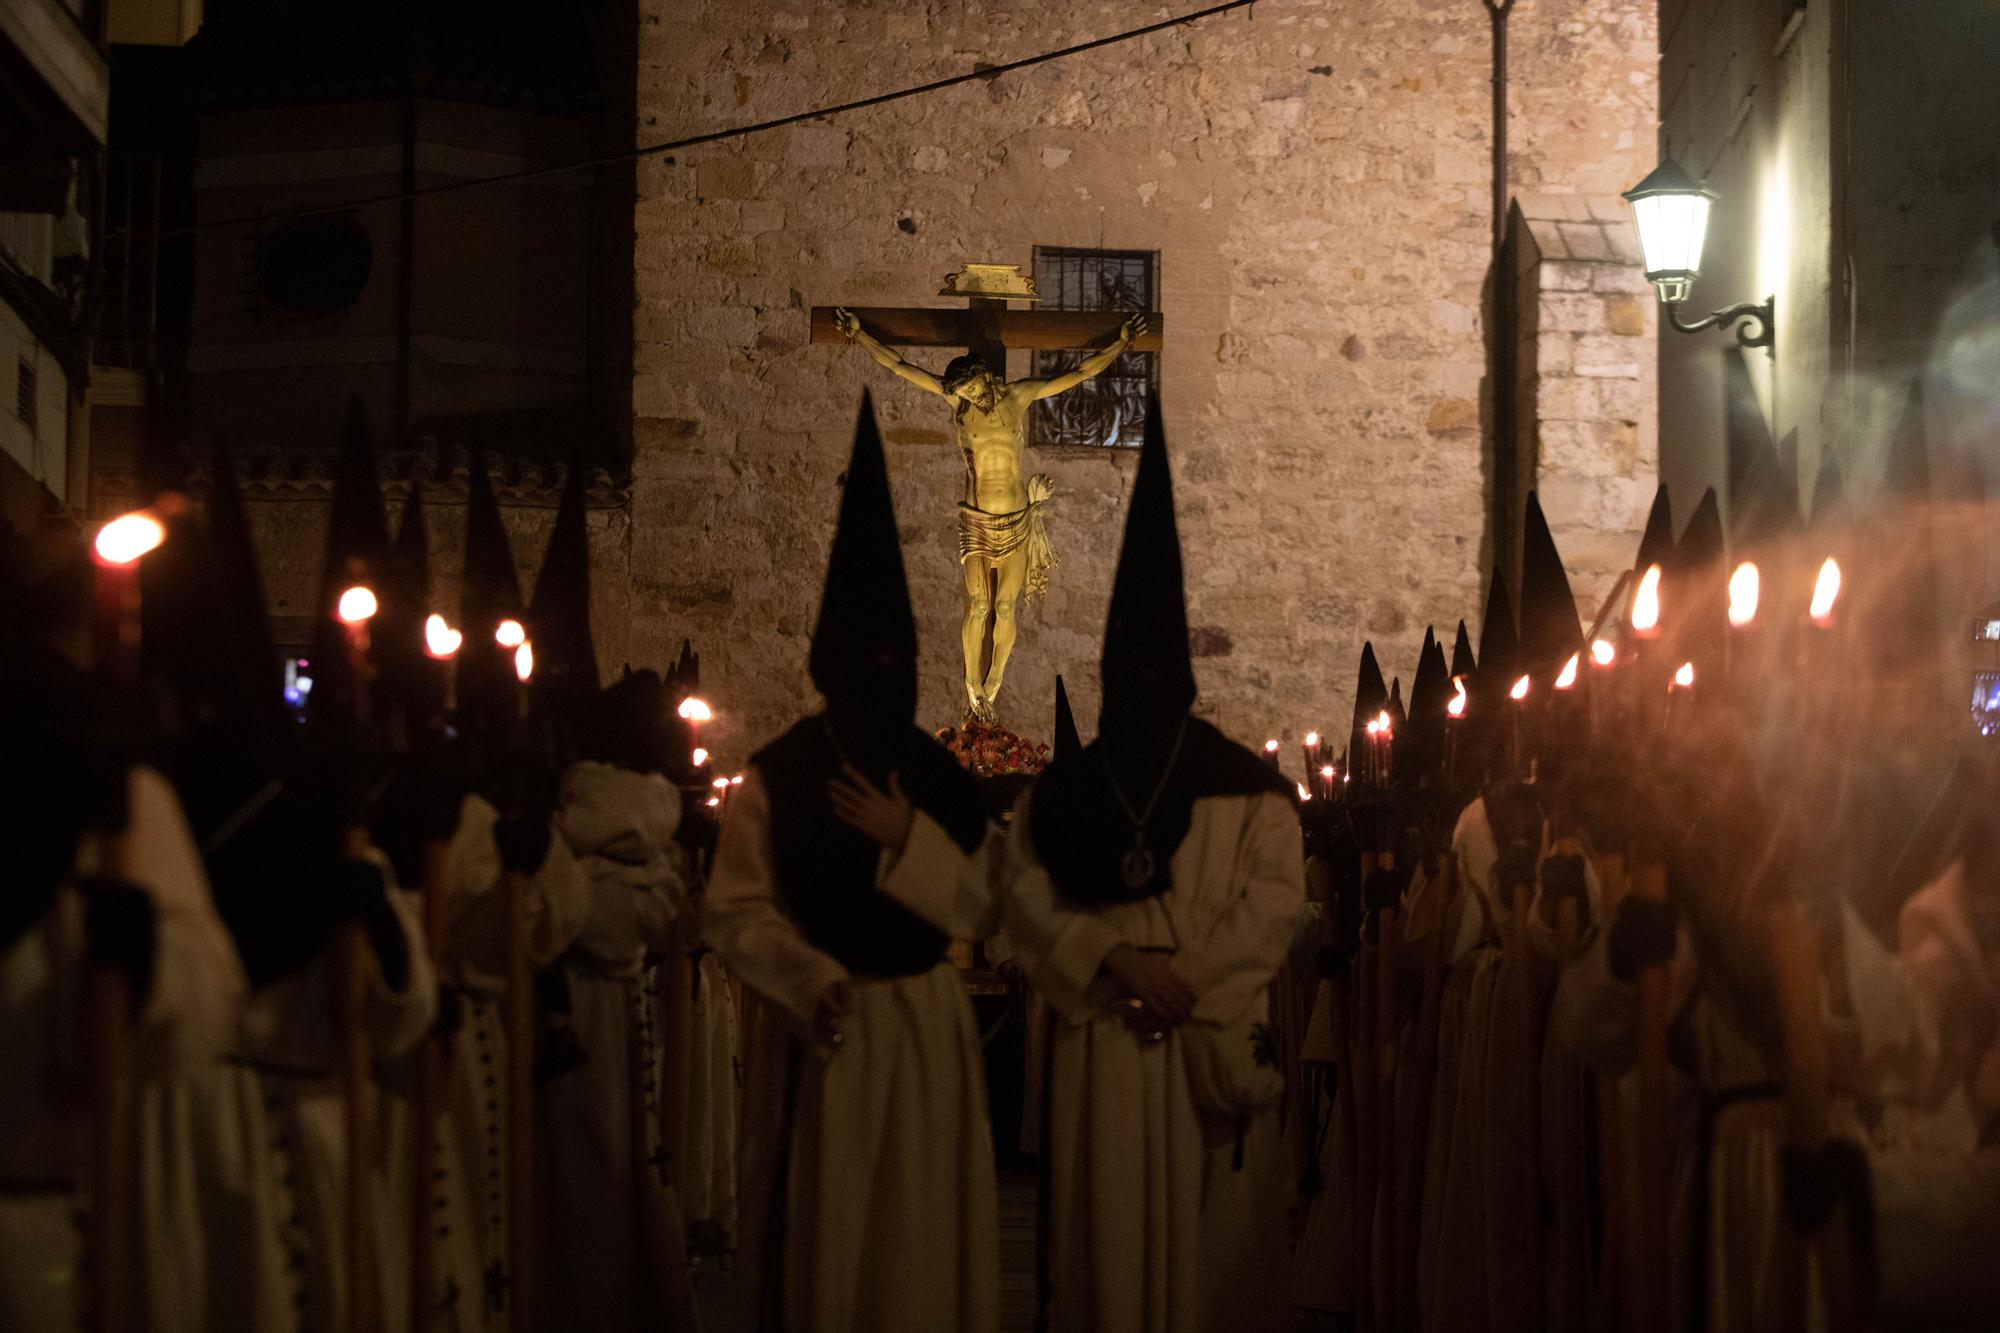 GALERIA | Las mejores imágenes de la procesión de Nuestra Madre